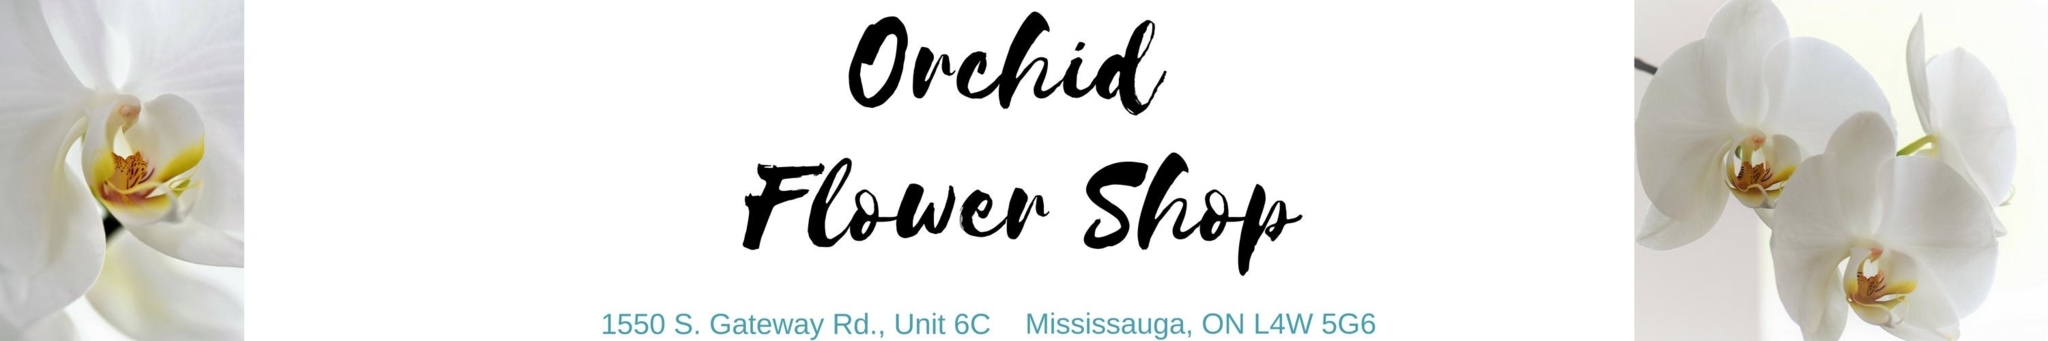 Orchid Flower Shop - Florists & Flower Shops